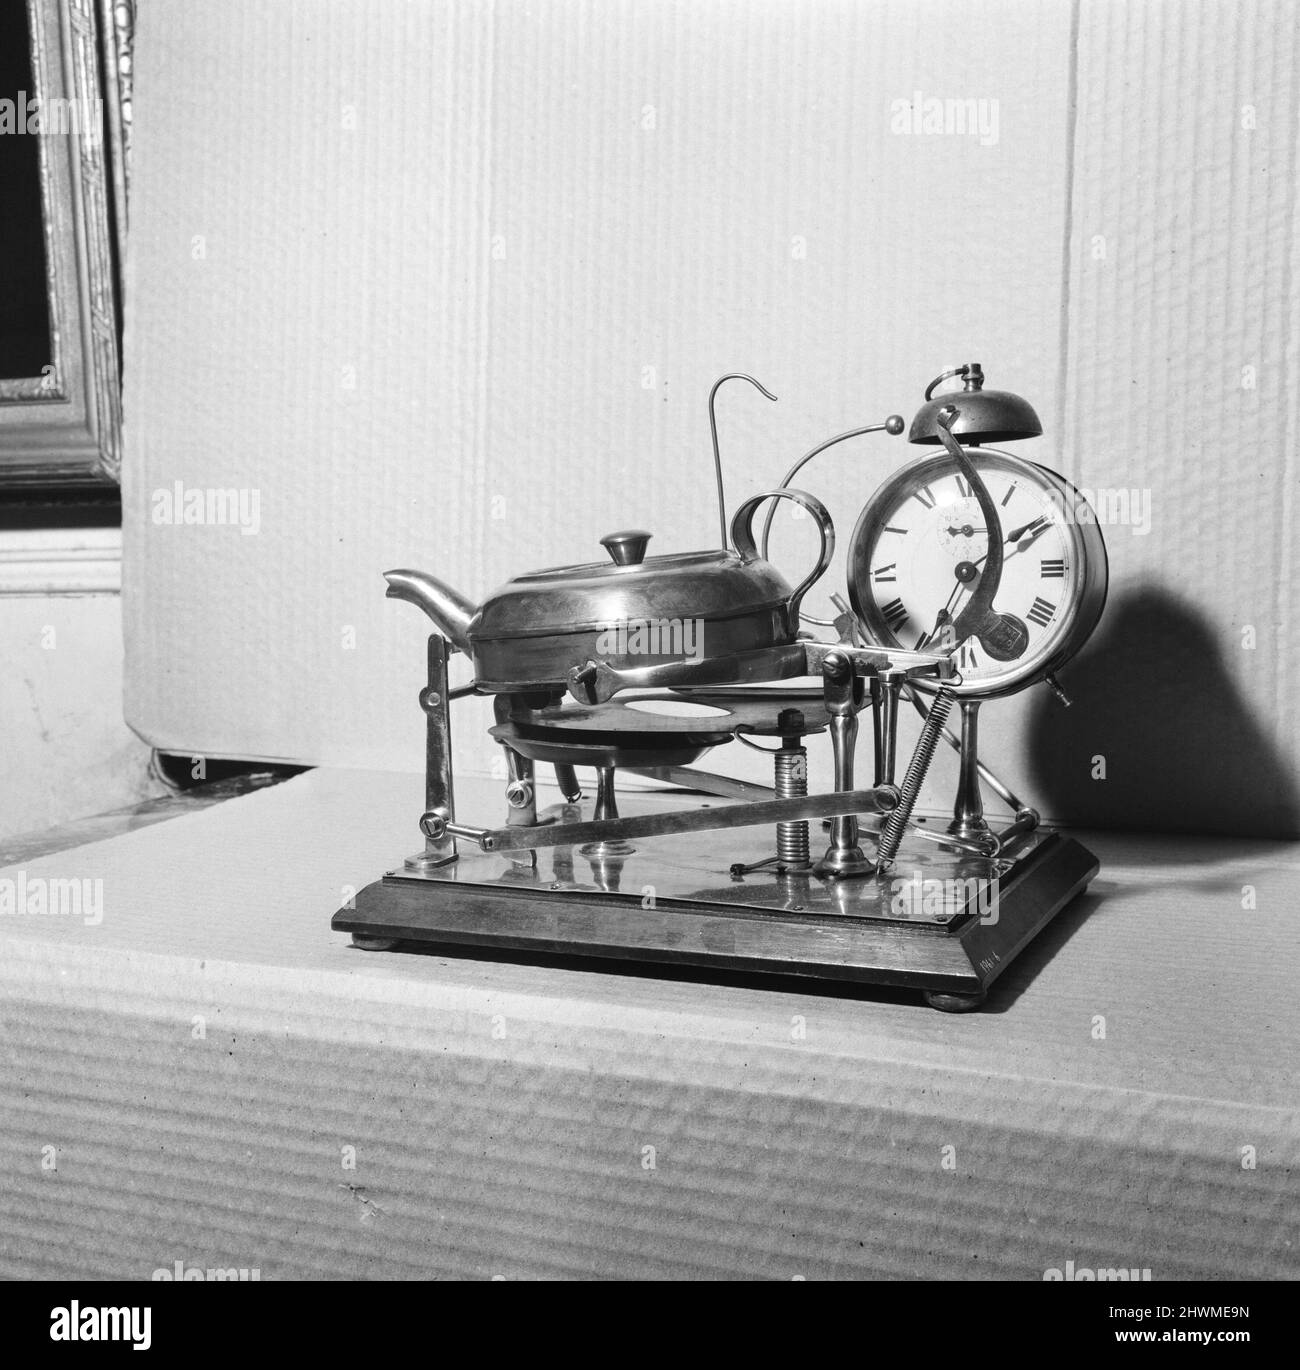 Uhr und Wasserkocher Tee Maker gezeigt auf der Fantasies and Follies Ausstellung in Brighton. Bild aufgenommen am 27.. April 1971 Stockfoto